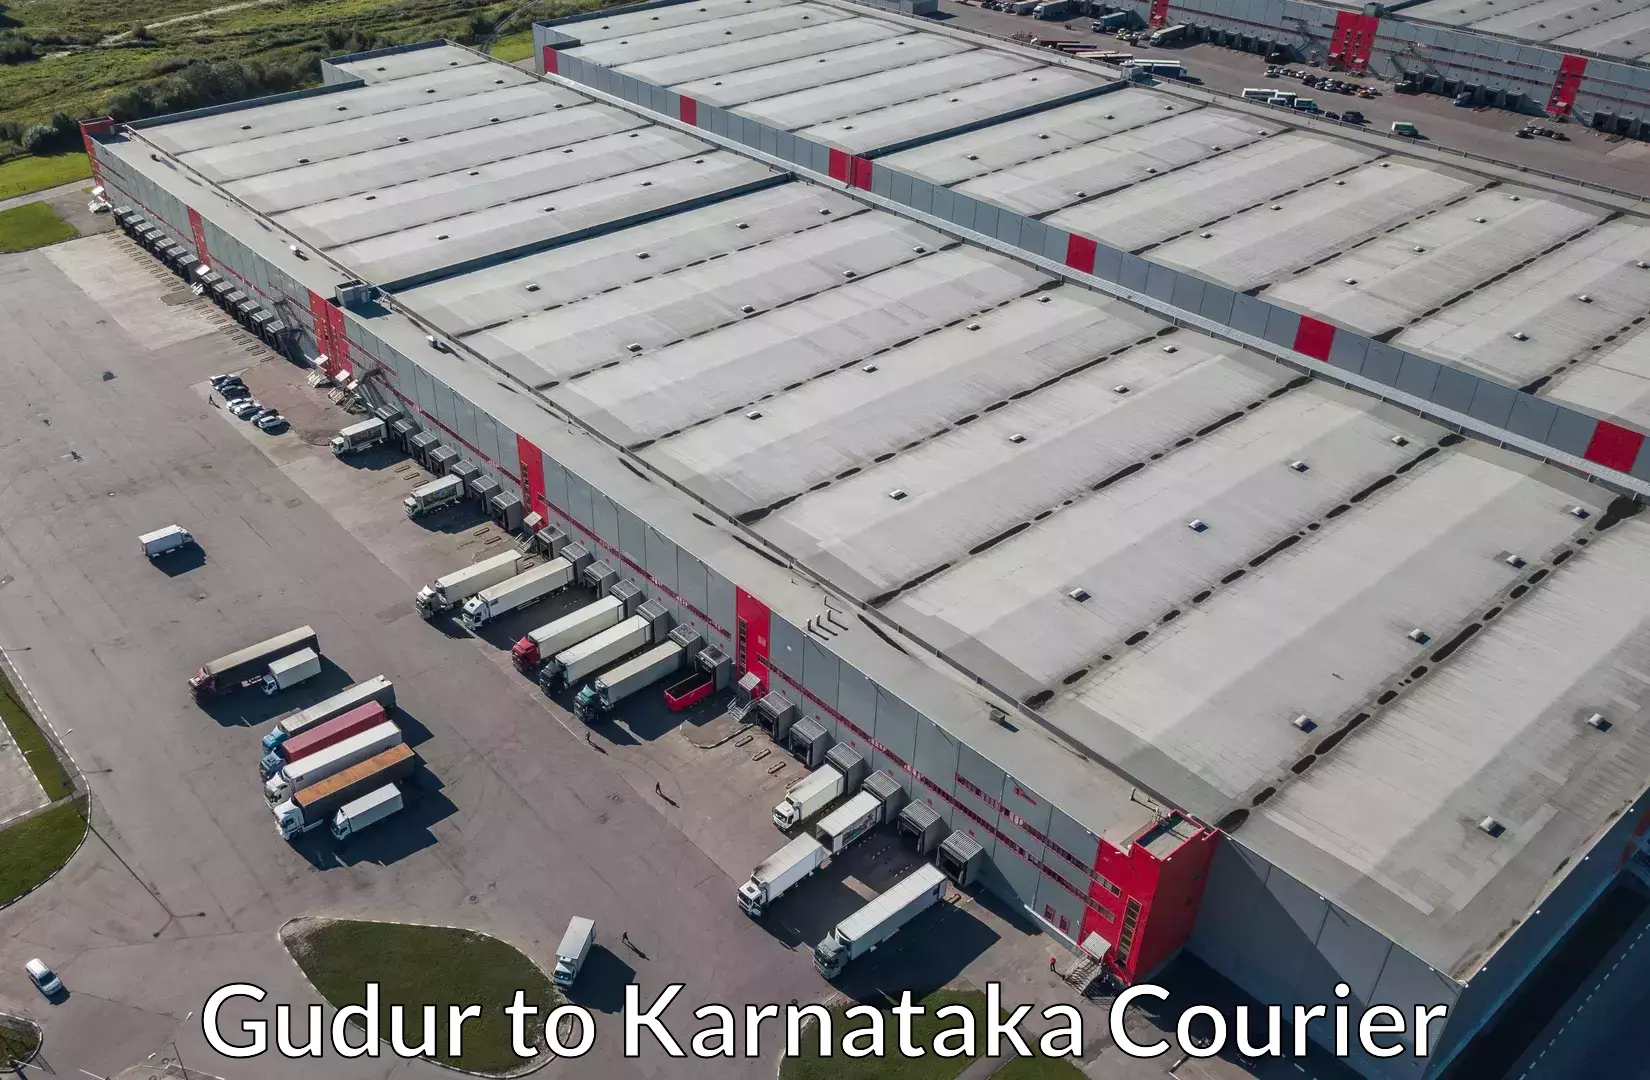 Efficient relocation services Gudur to Karnataka